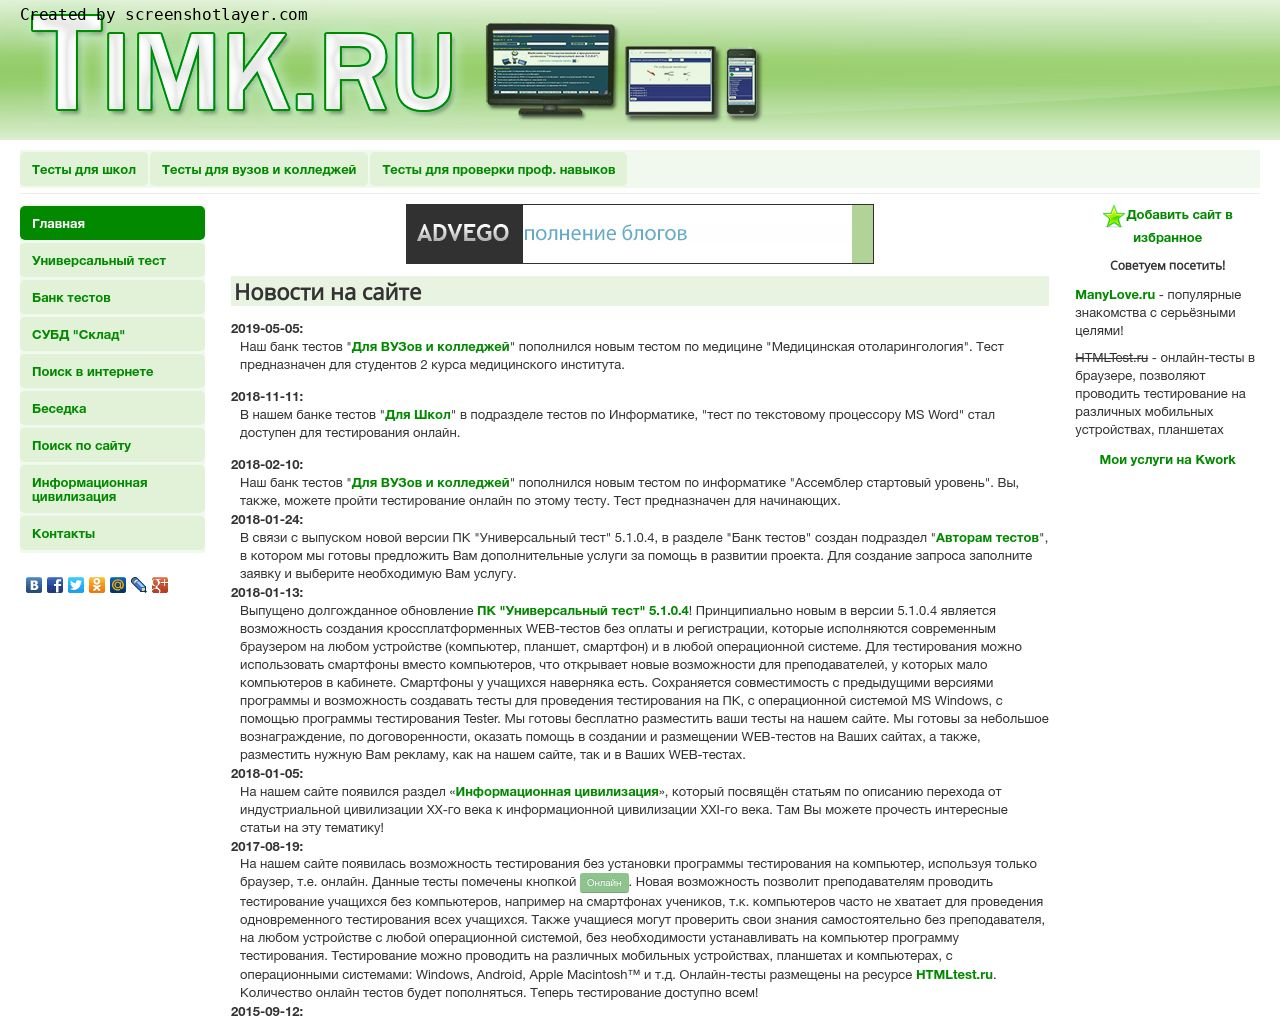 Изображение сайта timk.ru в разрешении 1280x1024